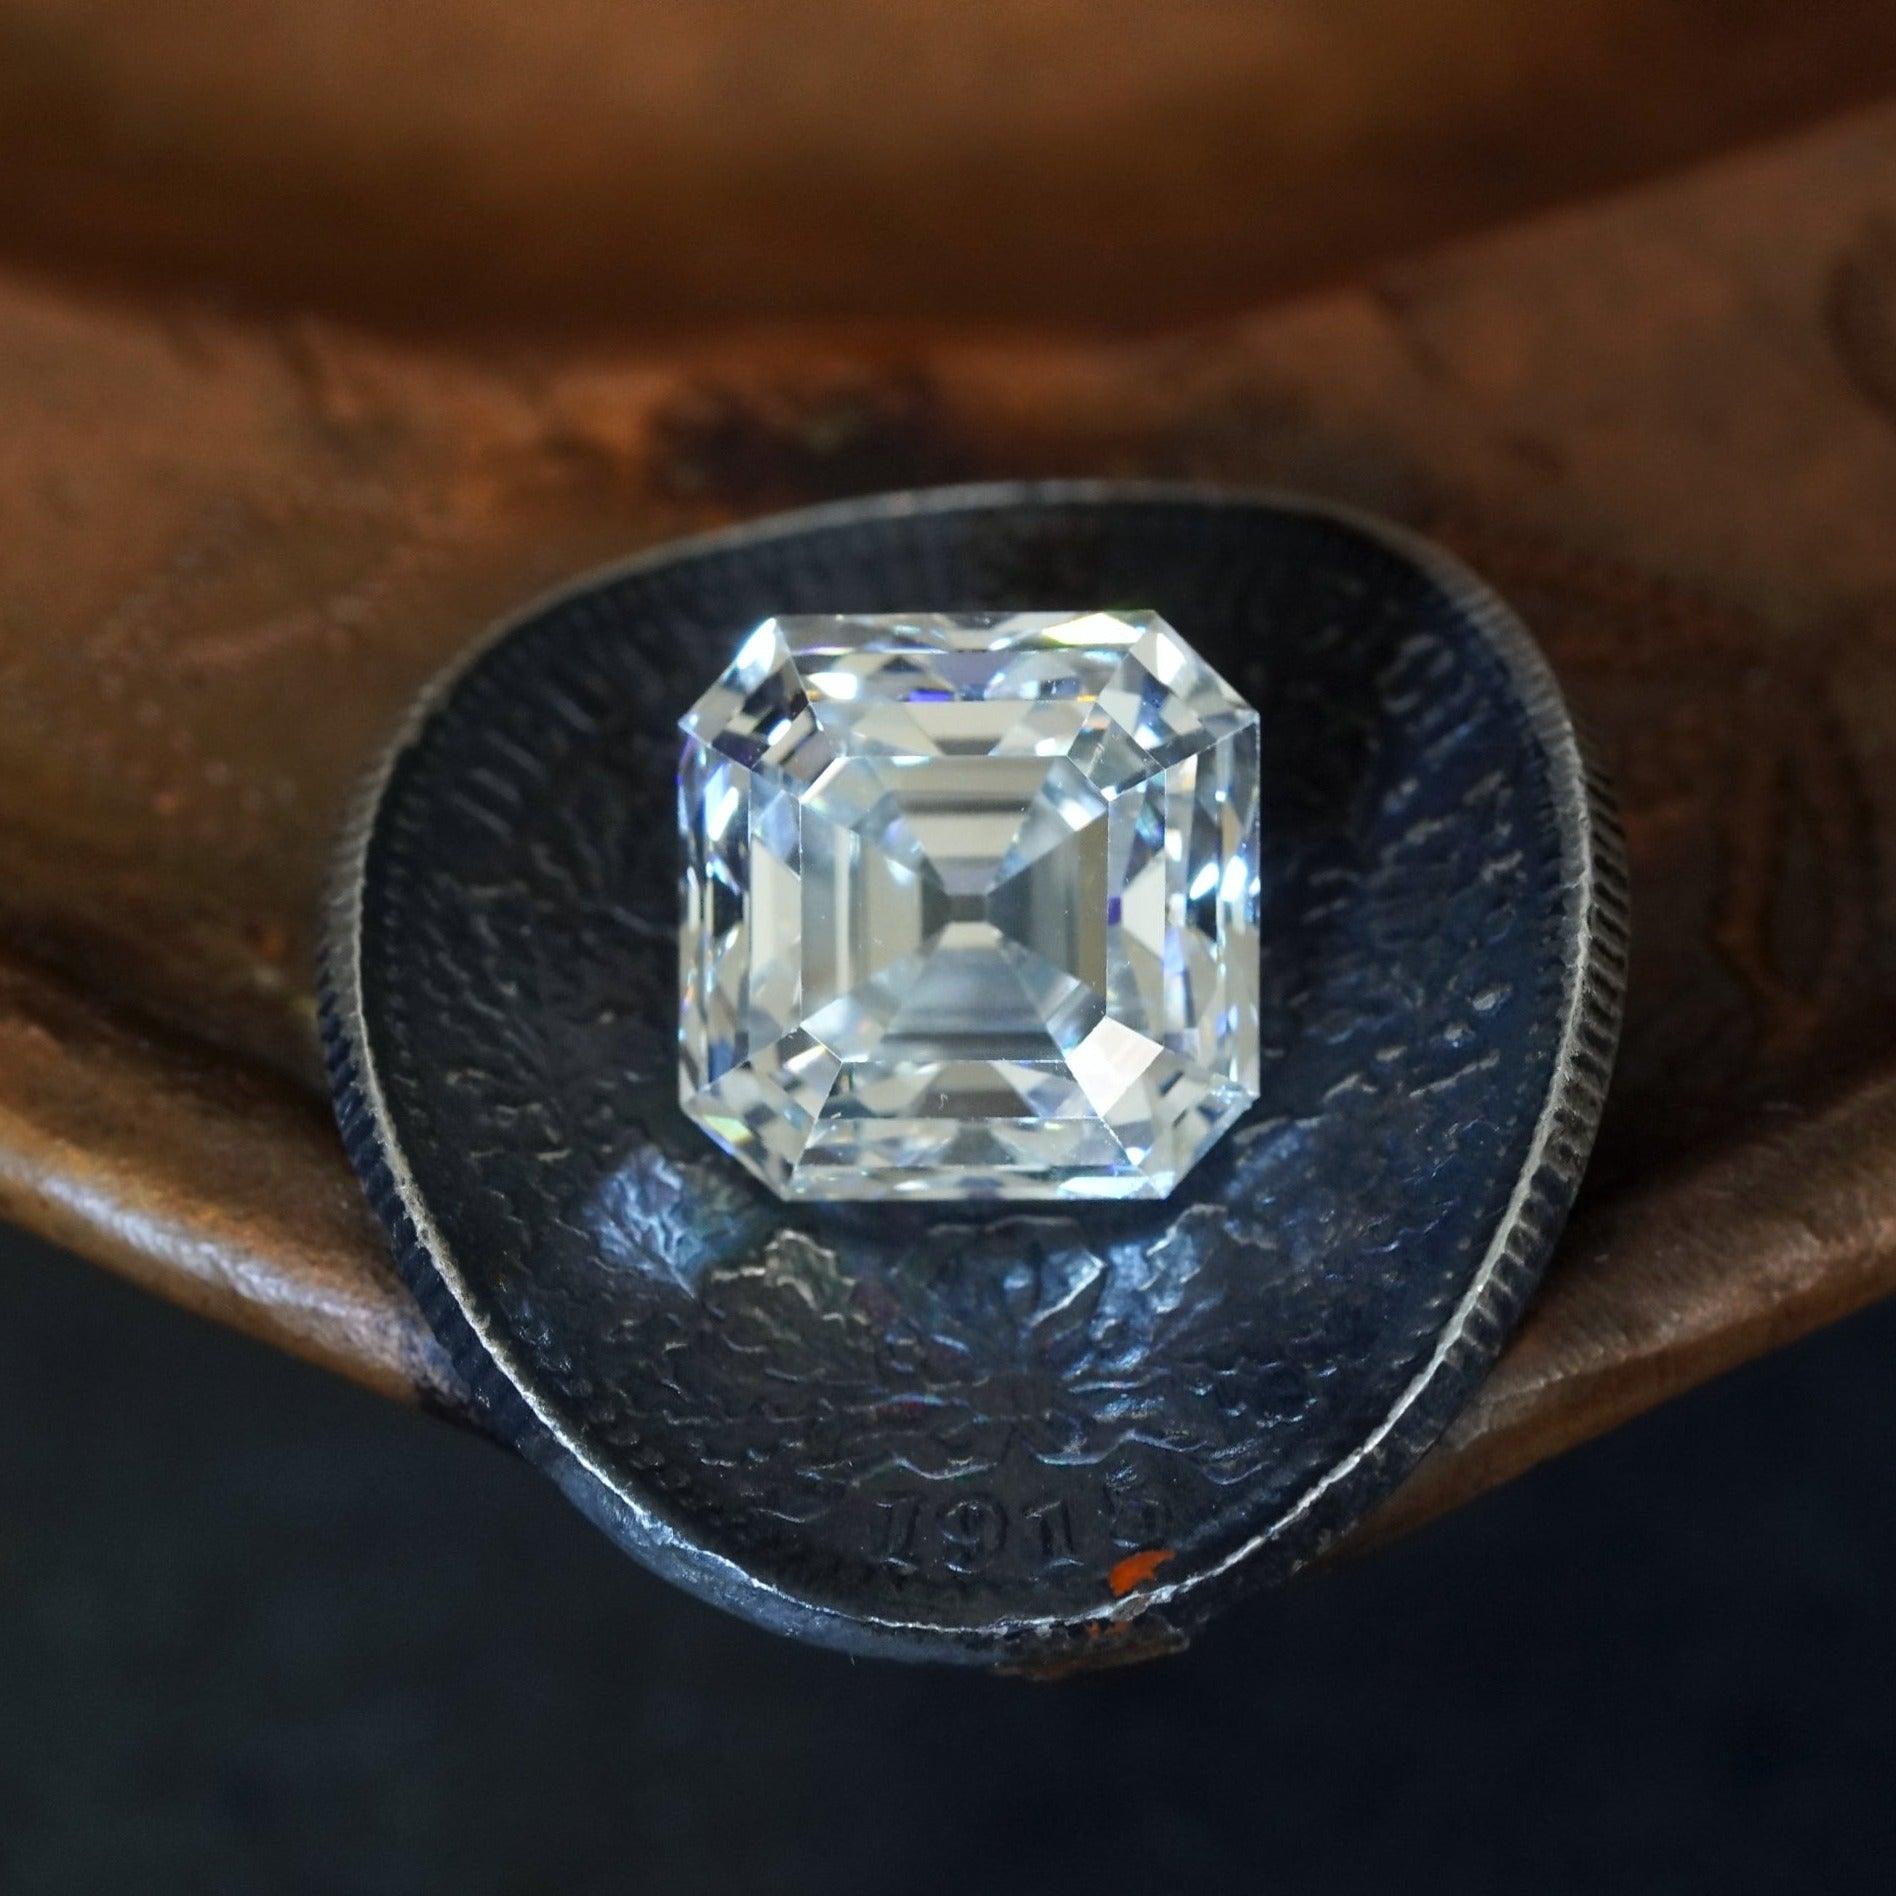 Exquisite 5.66 Carat Diamond - Anup Jogani Jewelry - Close-up